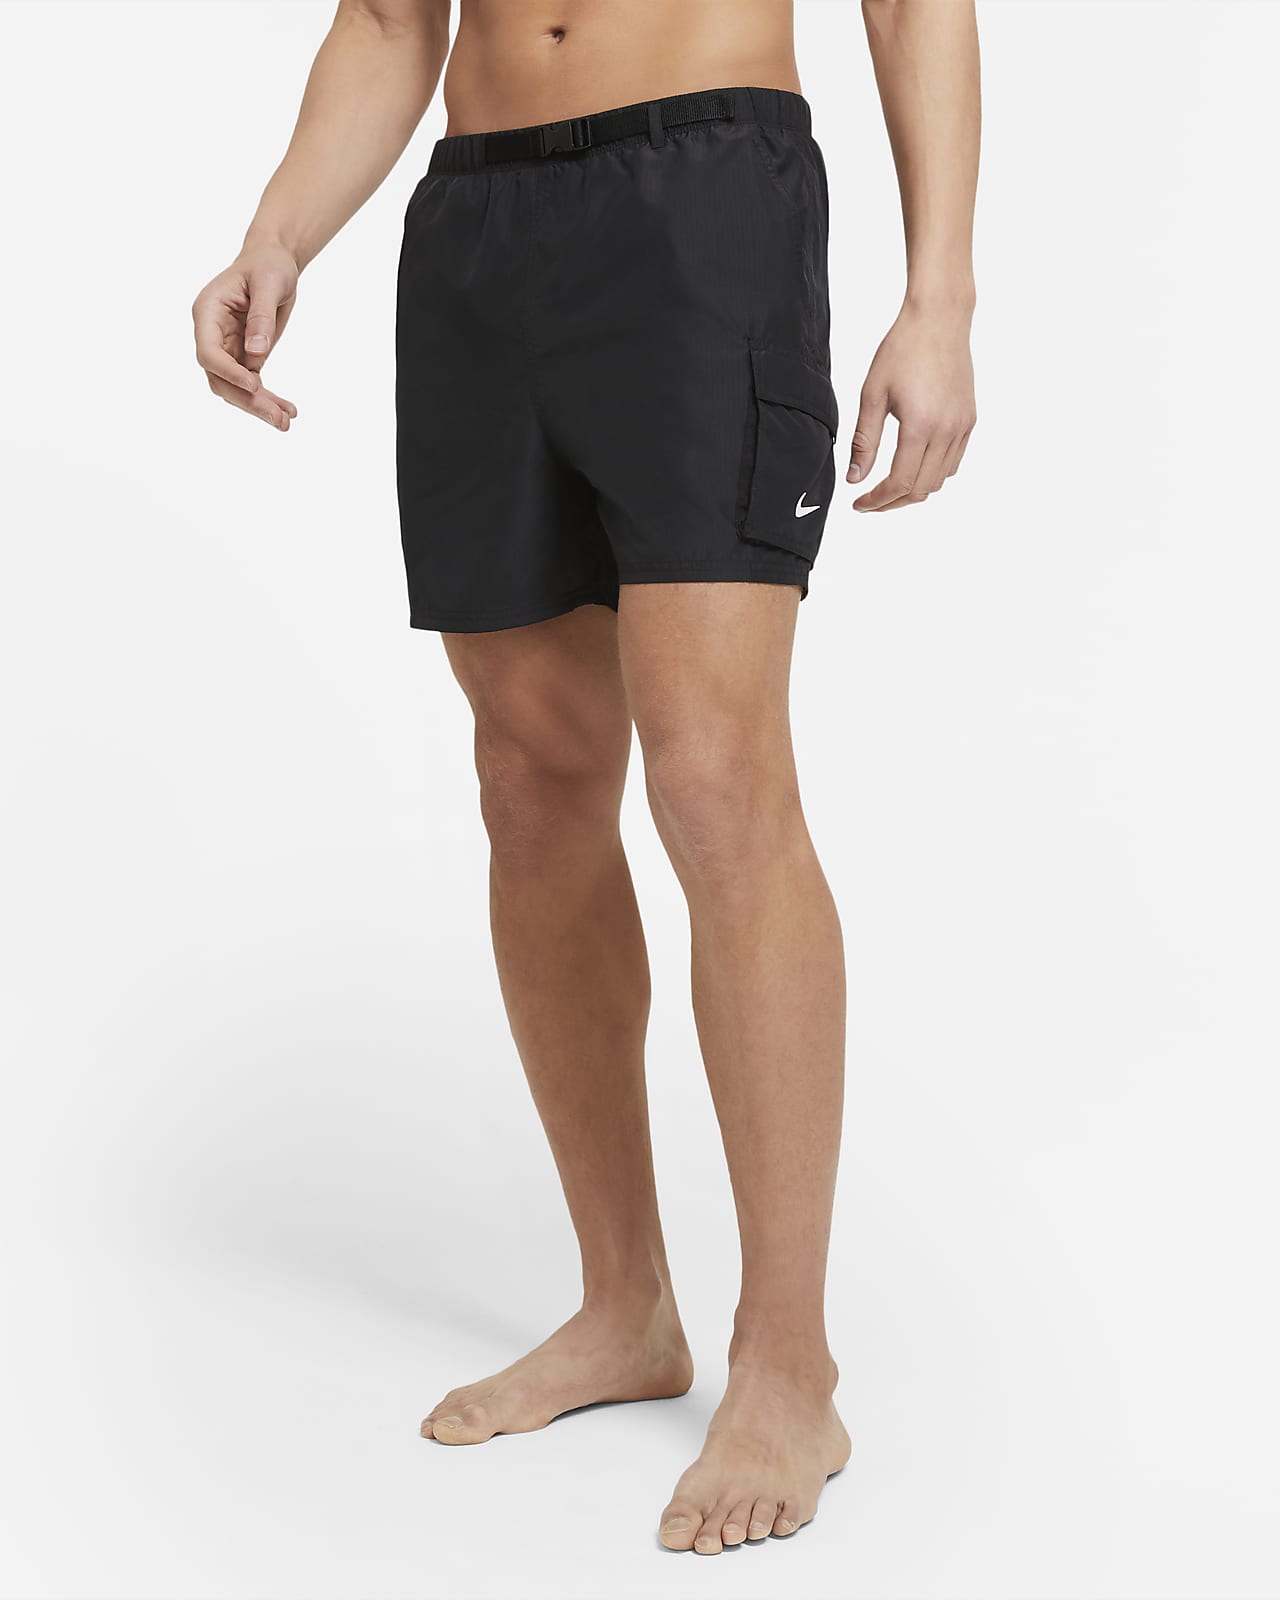 Queja ambiente Montgomery Traje de baño tipo short plegable de 13 cm para hombre Nike. Nike.com